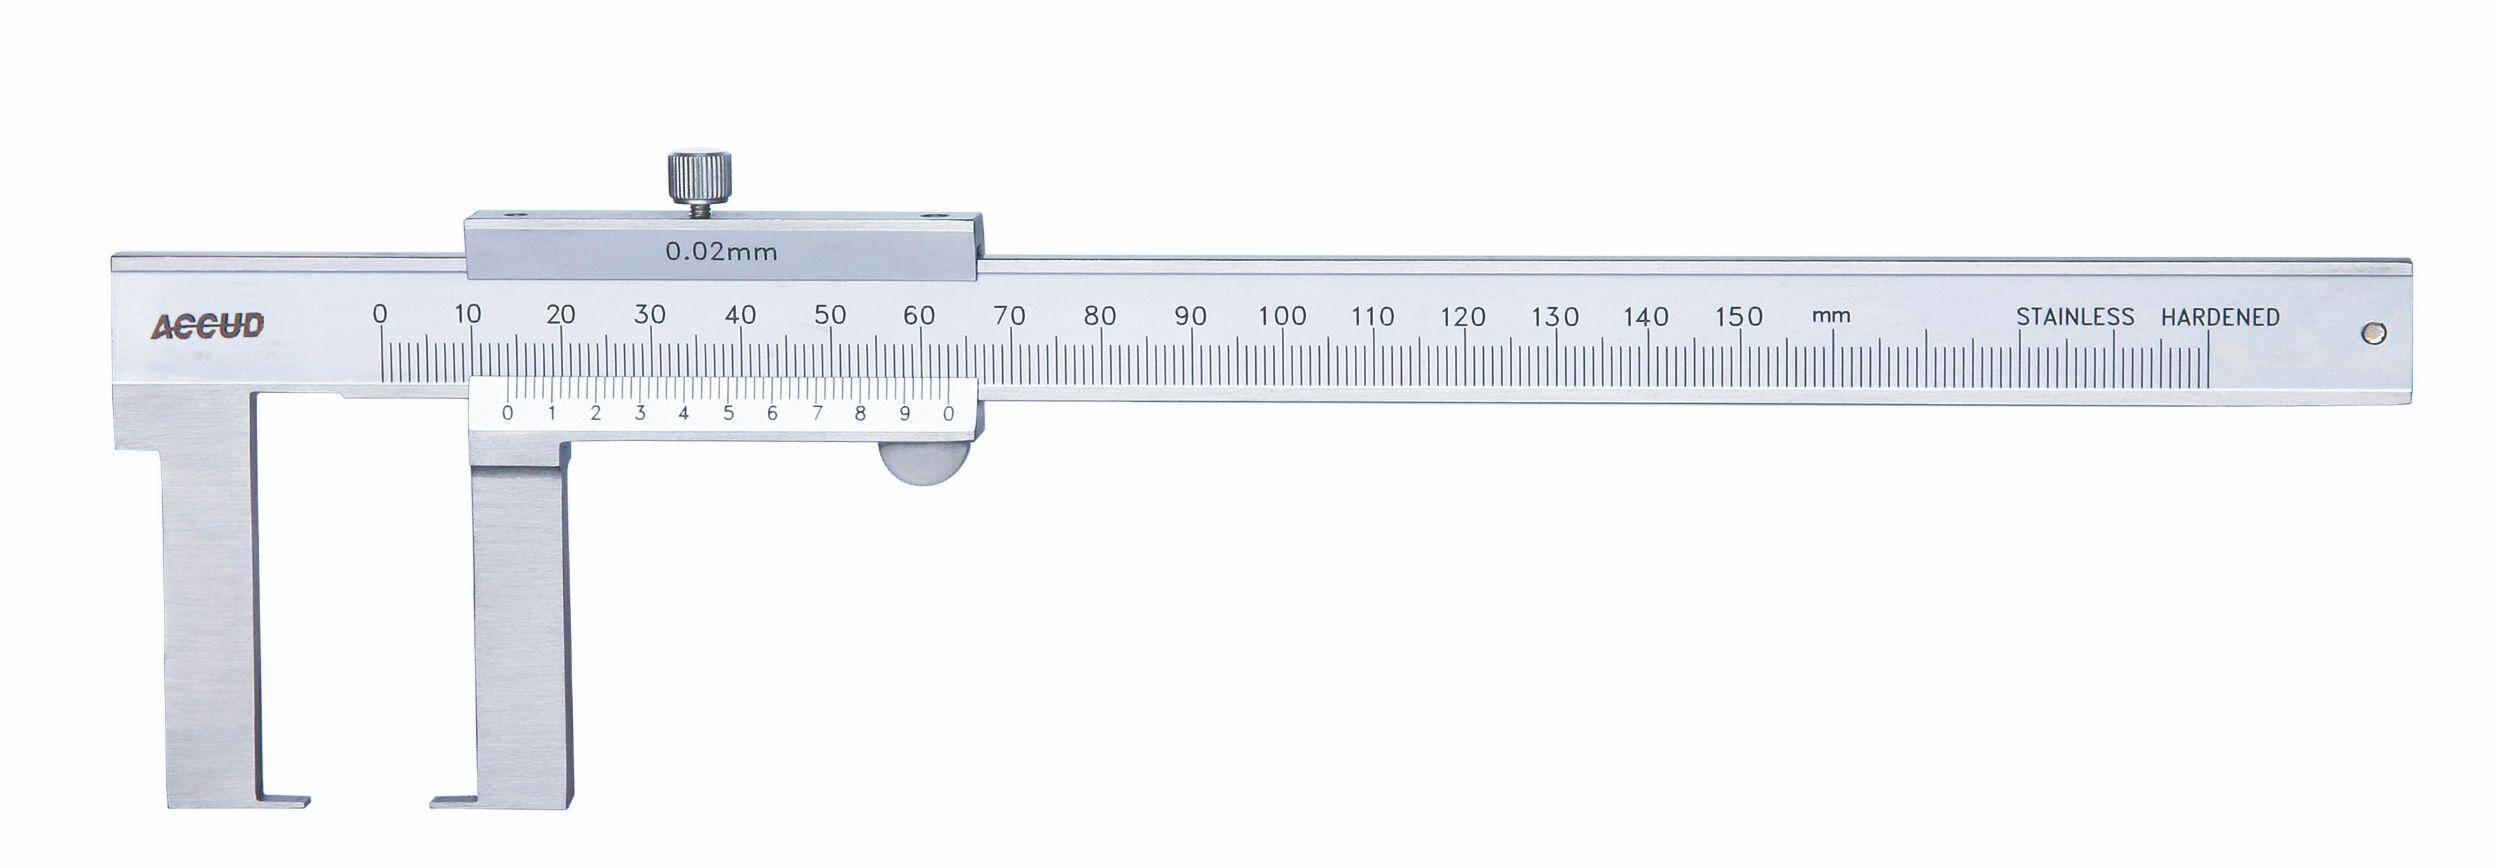 ACCUD suwmiarka analogowa 150/0.02 mm do pomiarów zewnętrznych + świadectwo wzorcowania 143-006-11 WZORC (Zdjęcie 3)